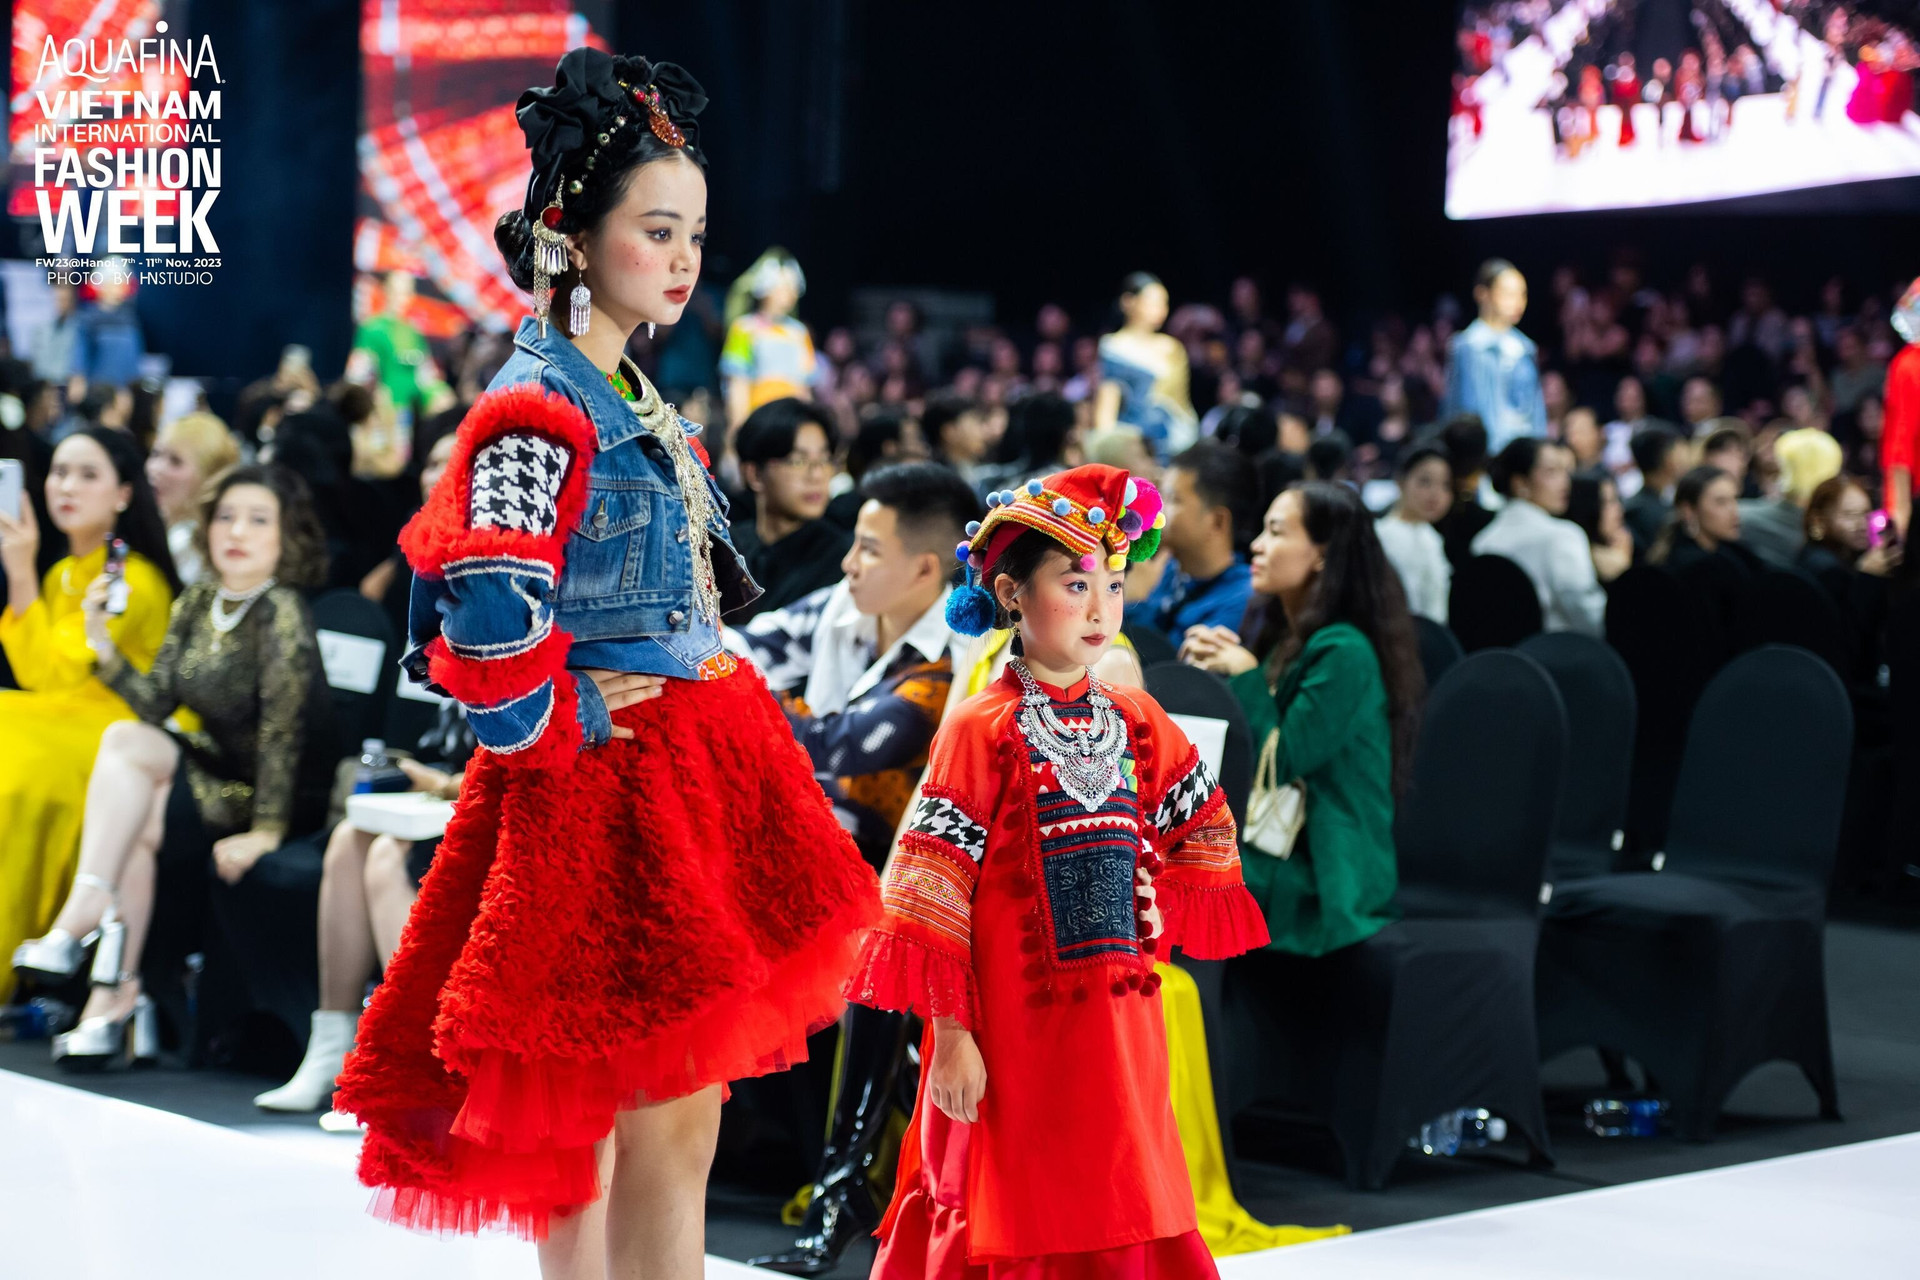 Maika Khánh Ngọc mới 12 tuổi nhưng đã có nhiều kinh nghiệm trên sàn diễn thời trang.